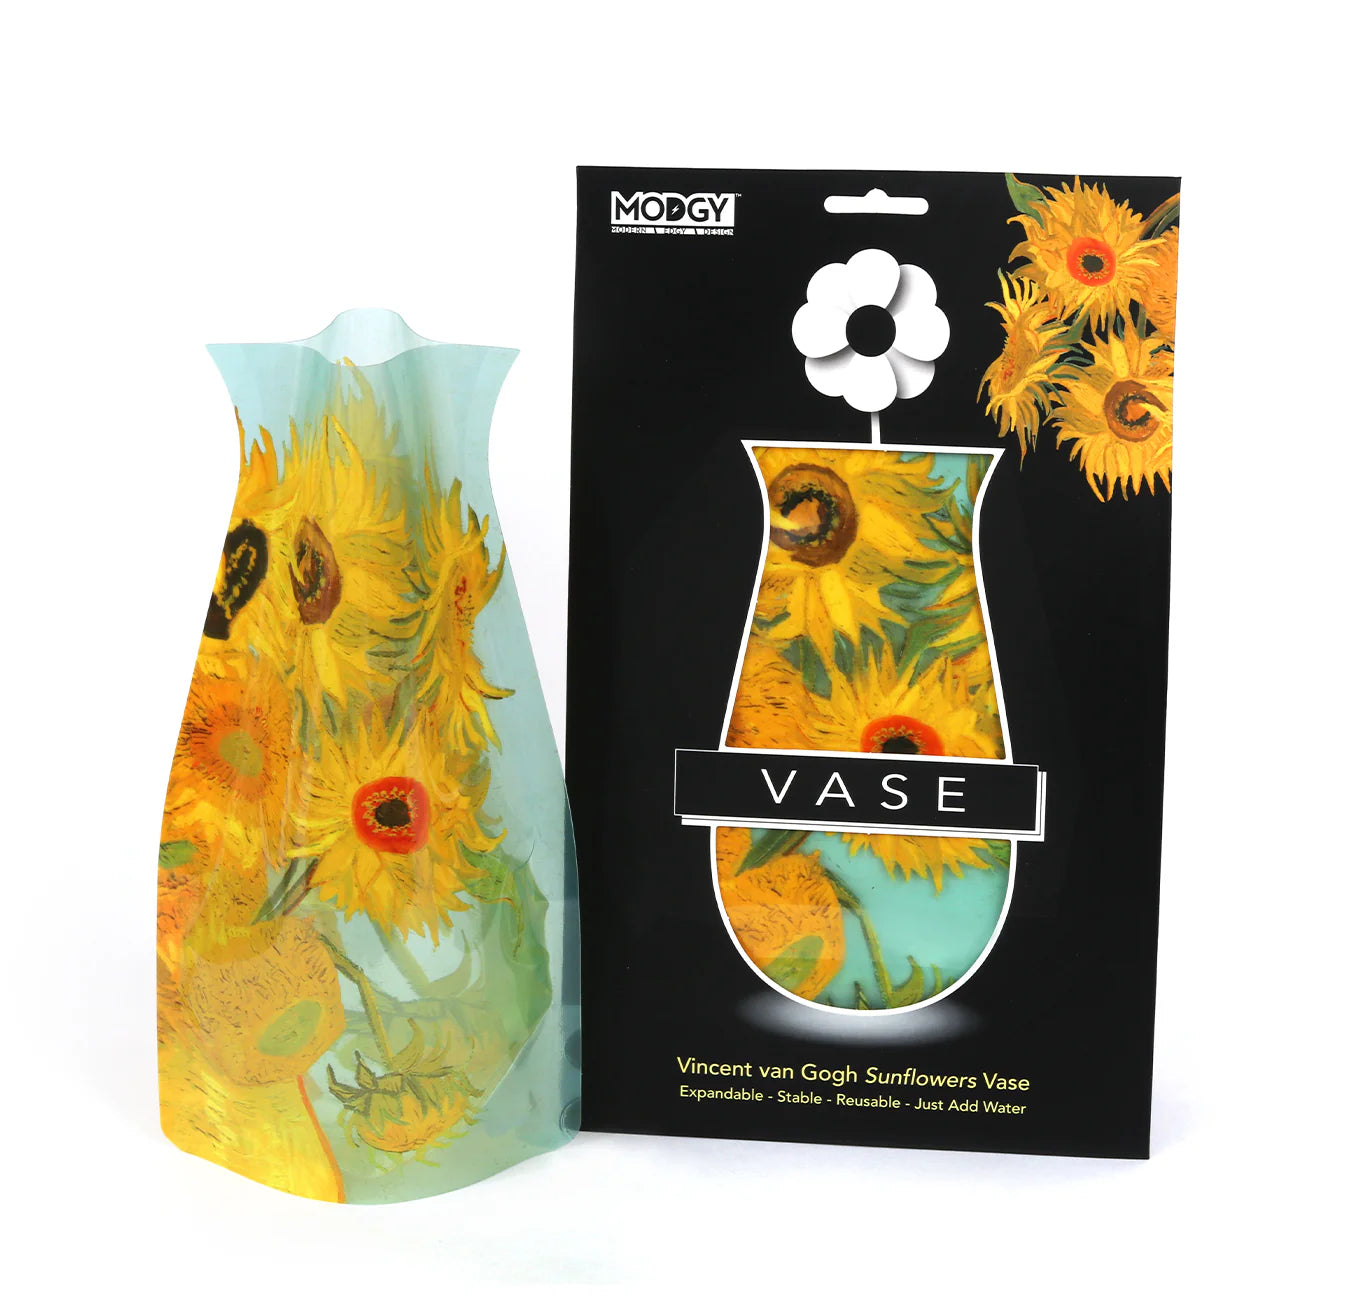 Vincent Van Gogh Sunflowers Vase - Modgy